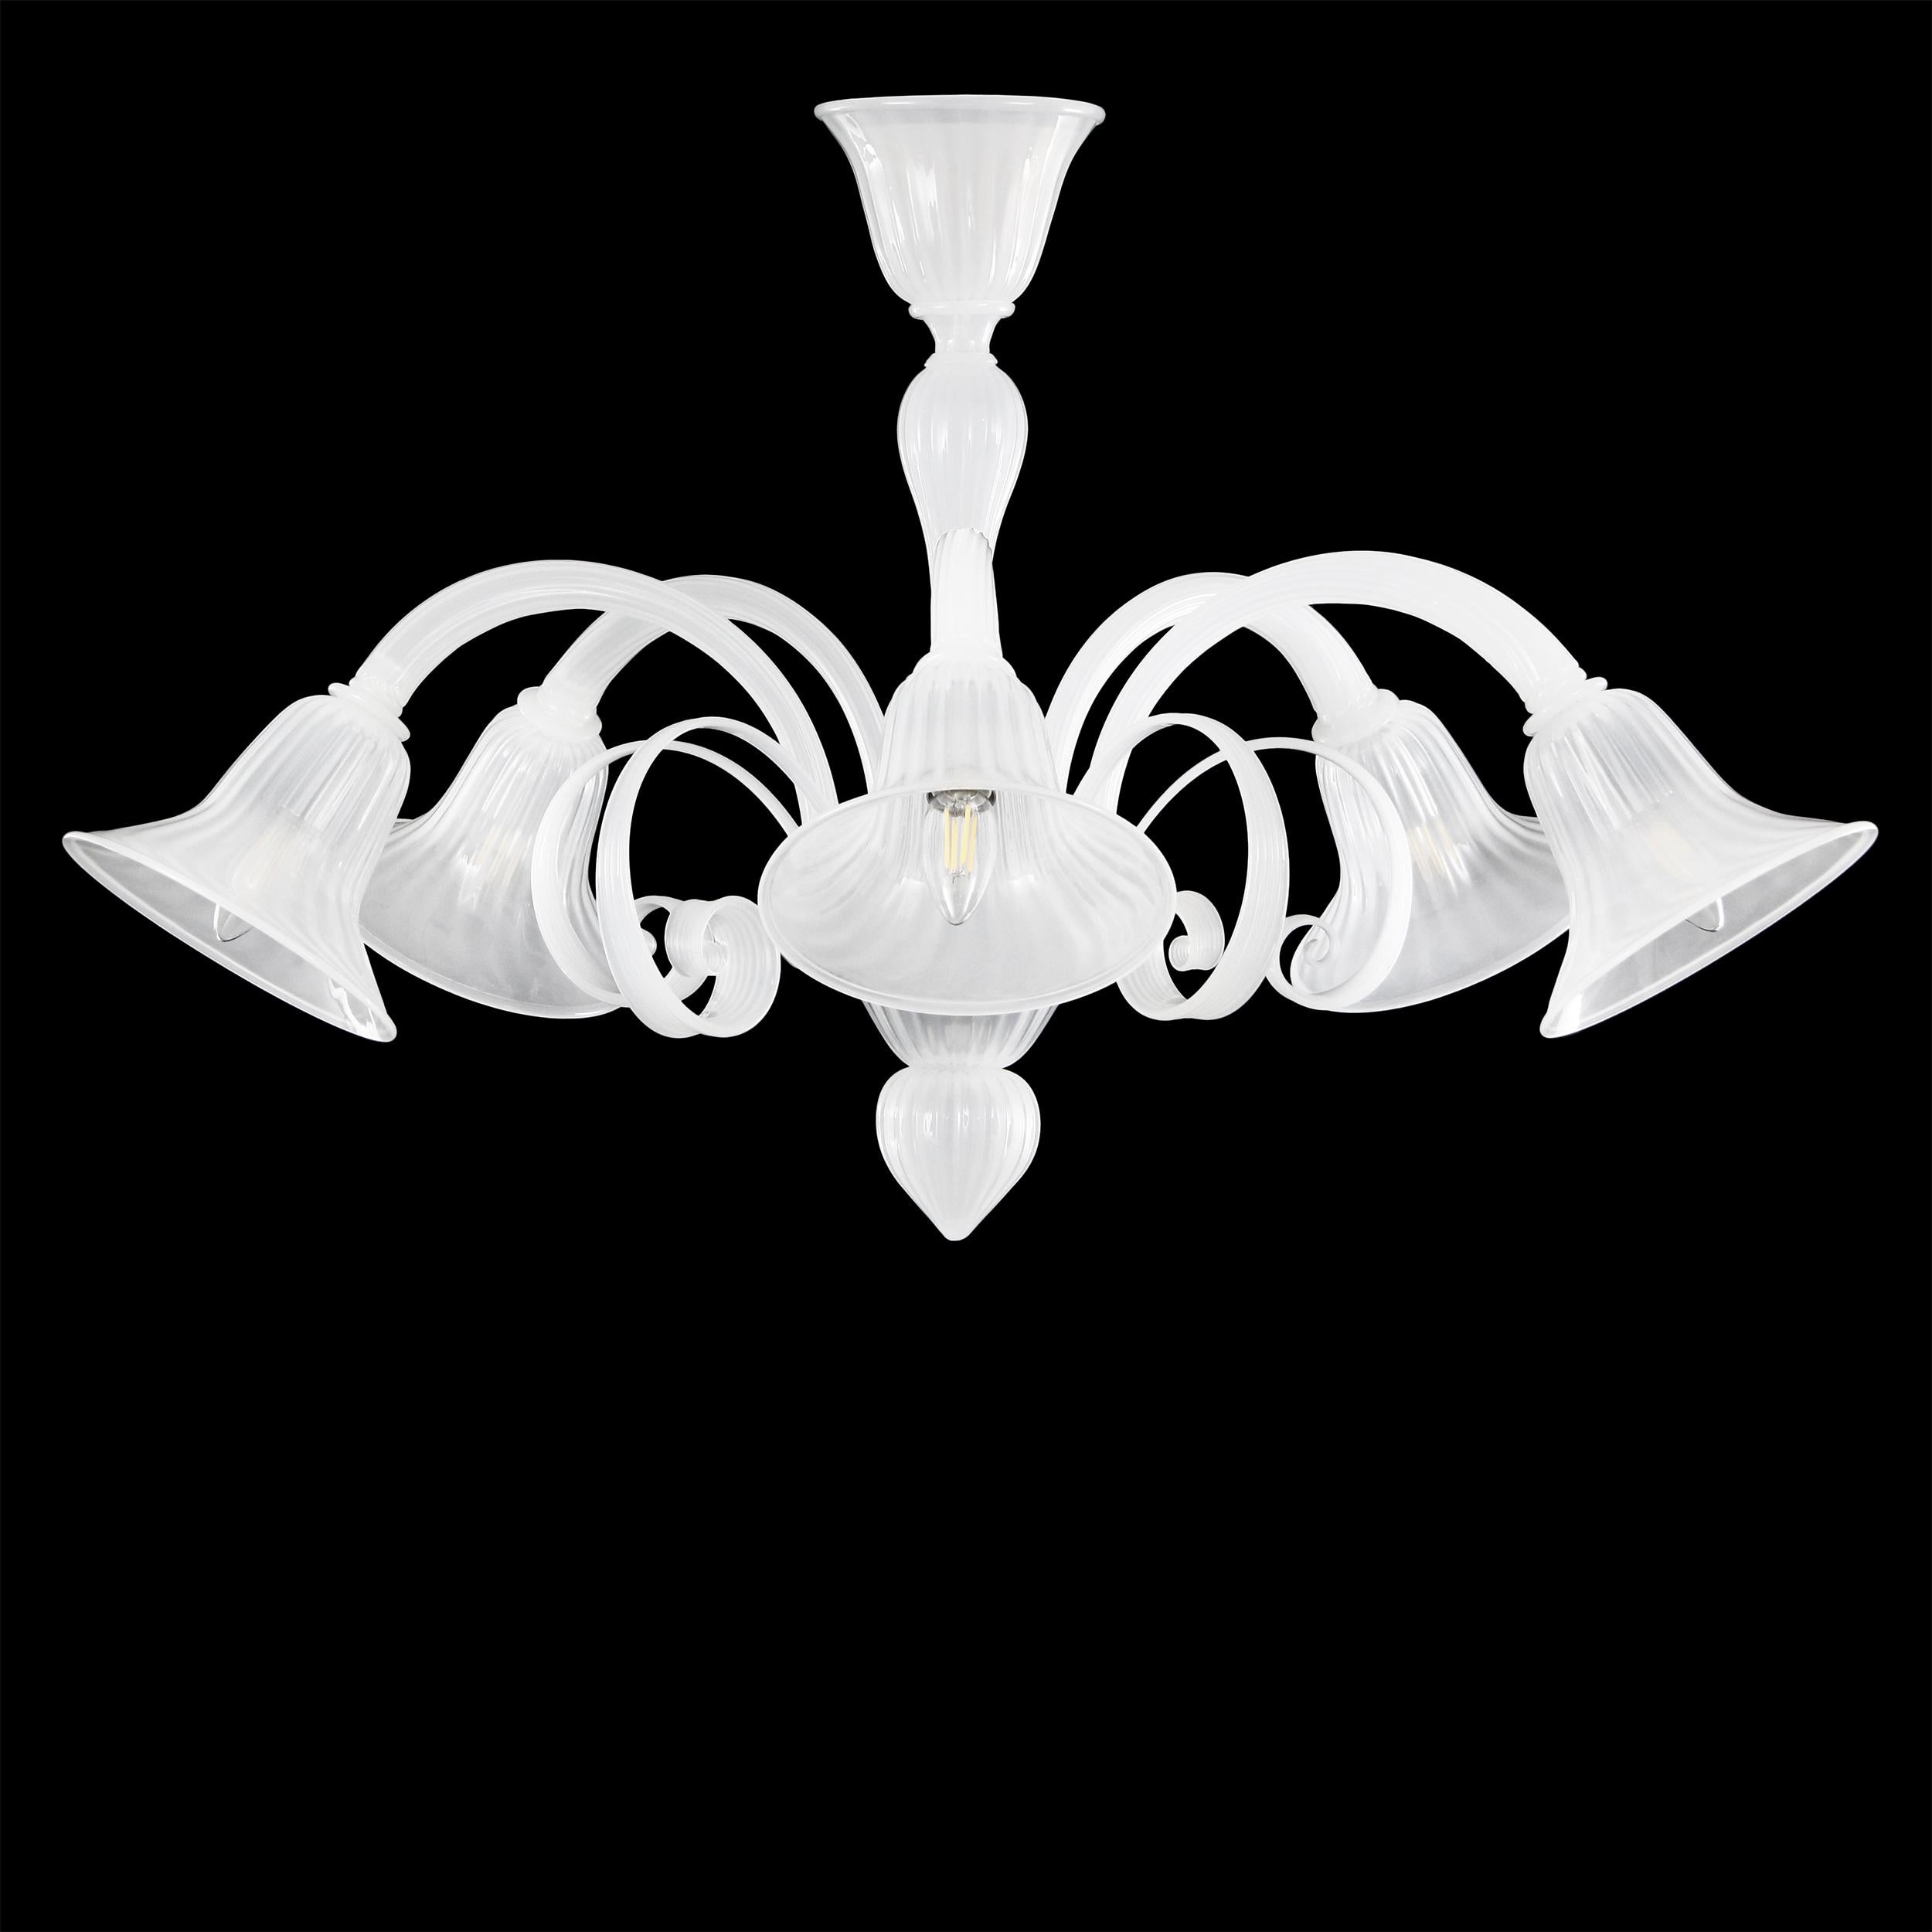 Capriccio von Multiforme ist eine 5-flammige Deckenleuchte aus weißem Seiden-Muranoglas mit Locken.
Es ist von der klassischen venezianischen Tradition inspiriert und zeichnet sich durch eine zentrale Säule aus, in der viele 